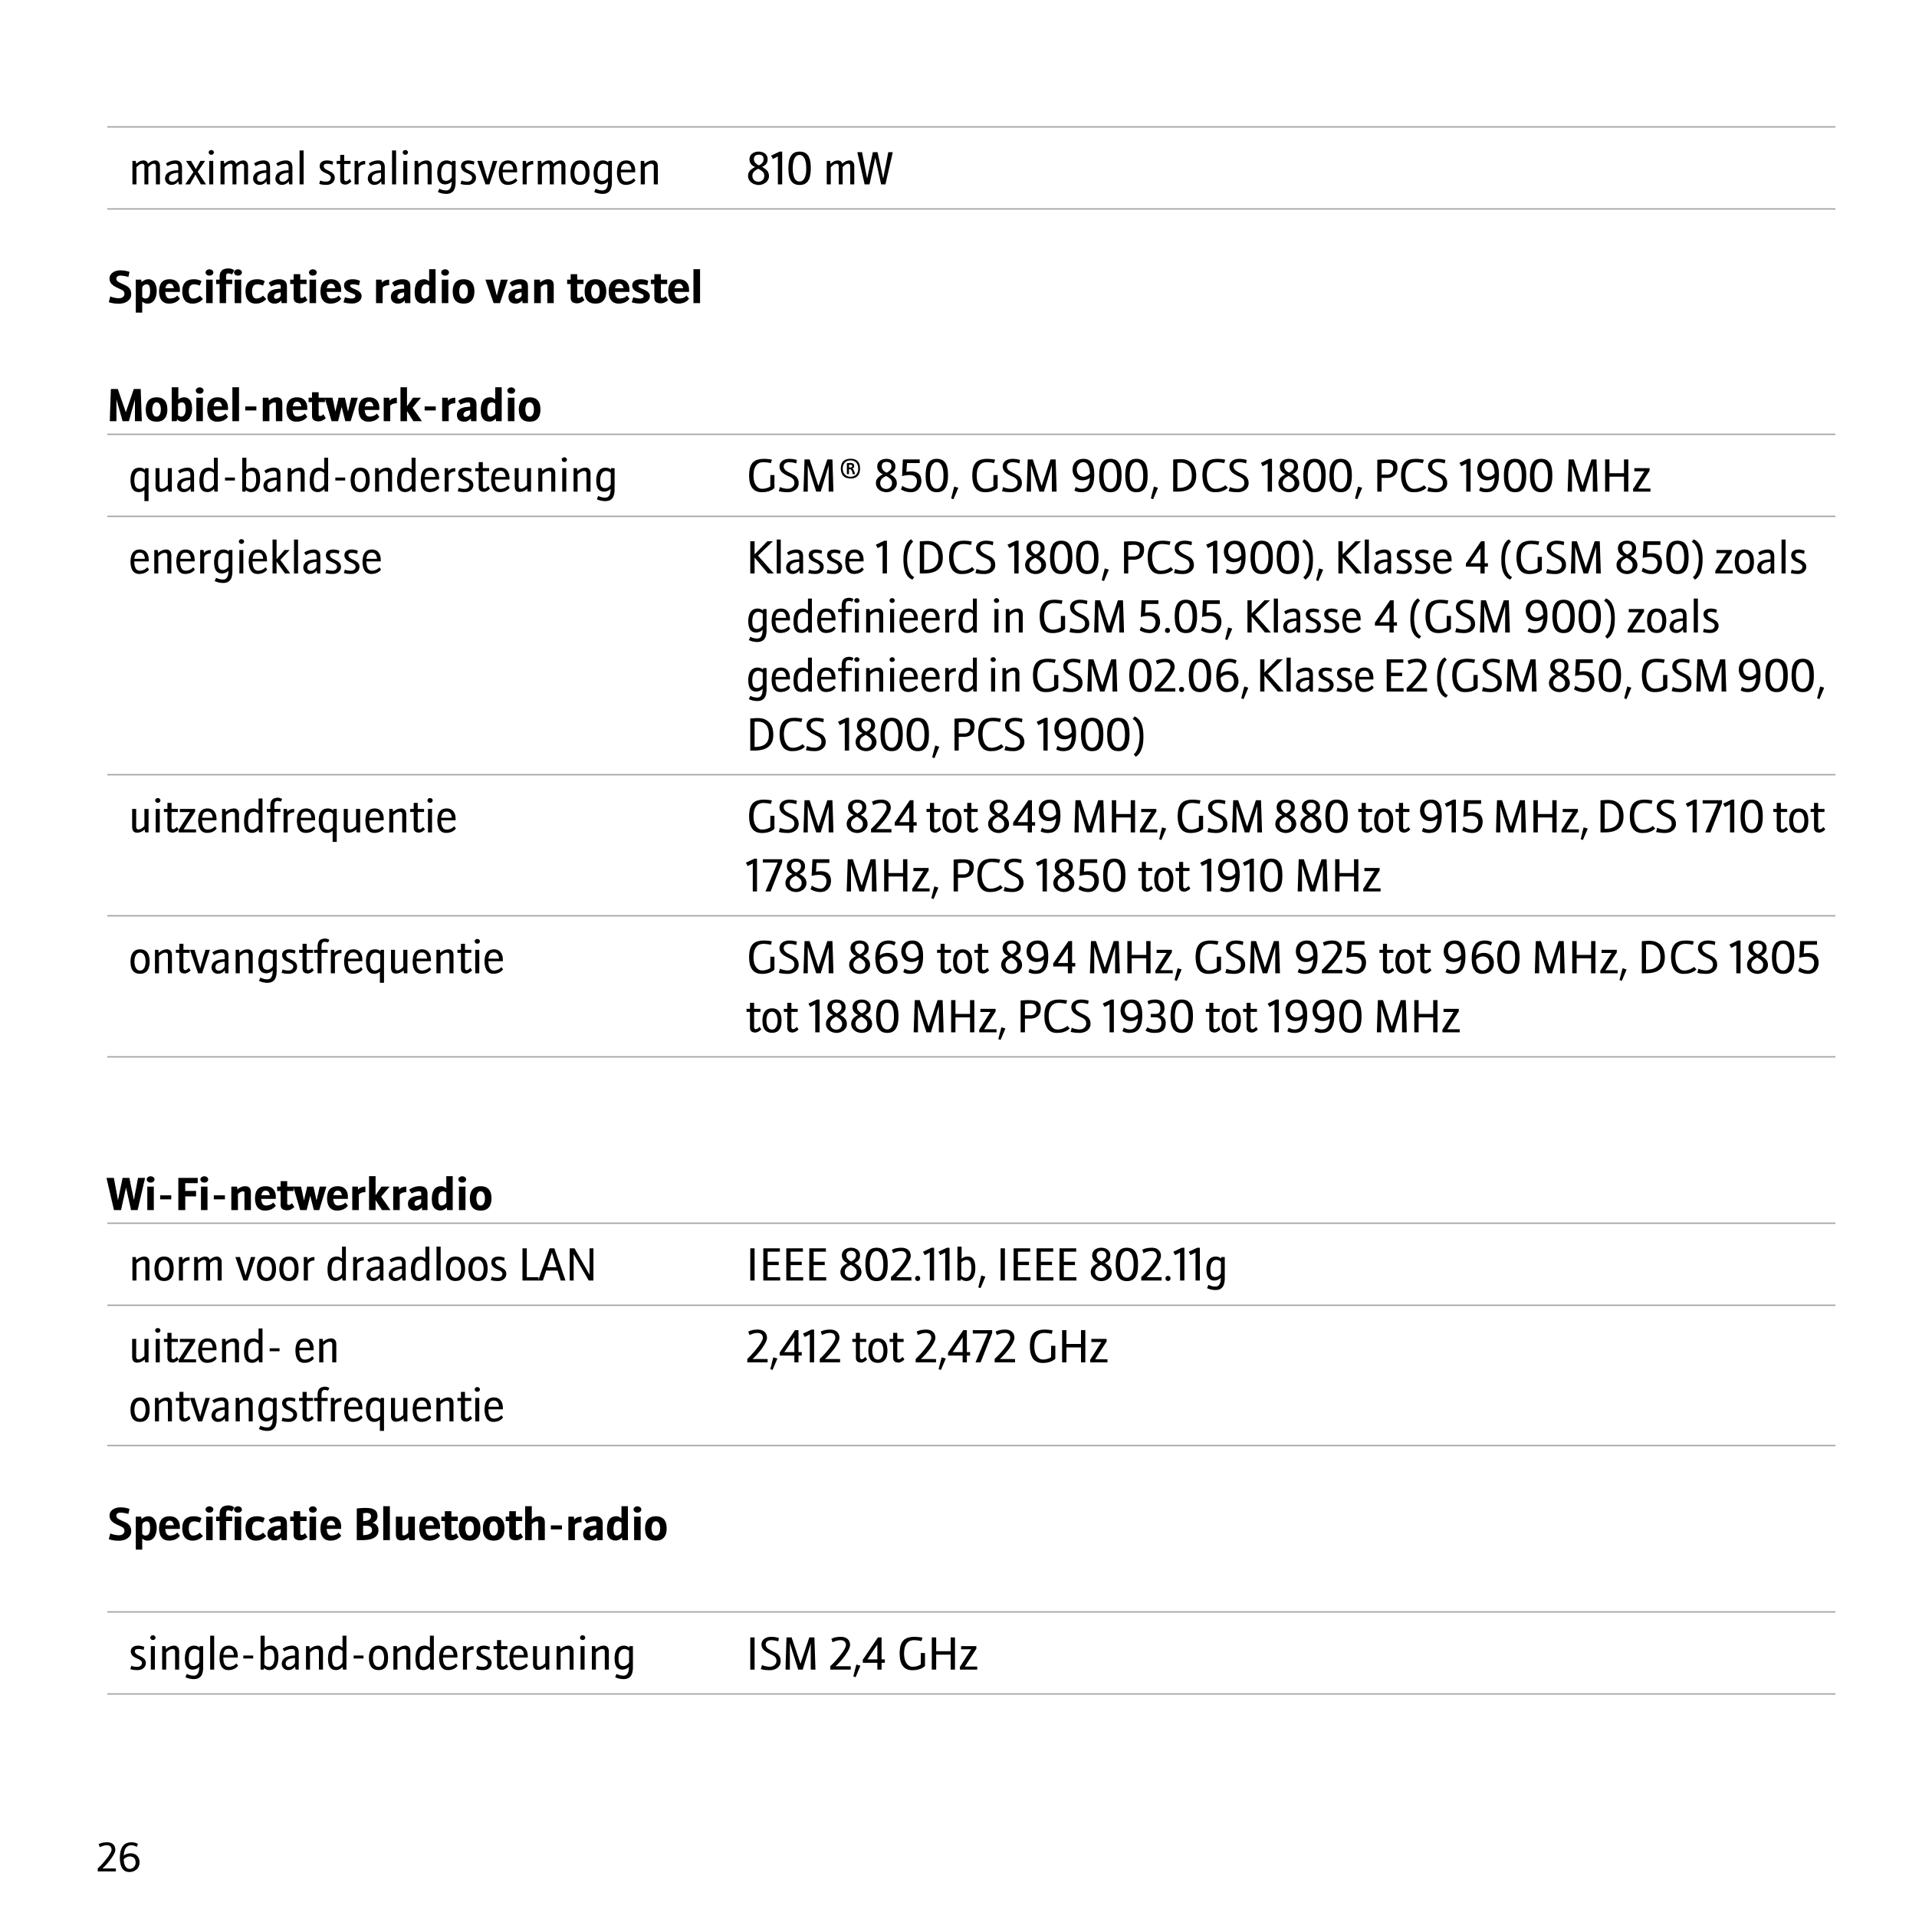 maximaal stralingsvermogen 810 mW
Specificaties radio van toestel
Mobiel-netwerk-radio
quad-band-ondersteuning GSM® 850, GSM 900